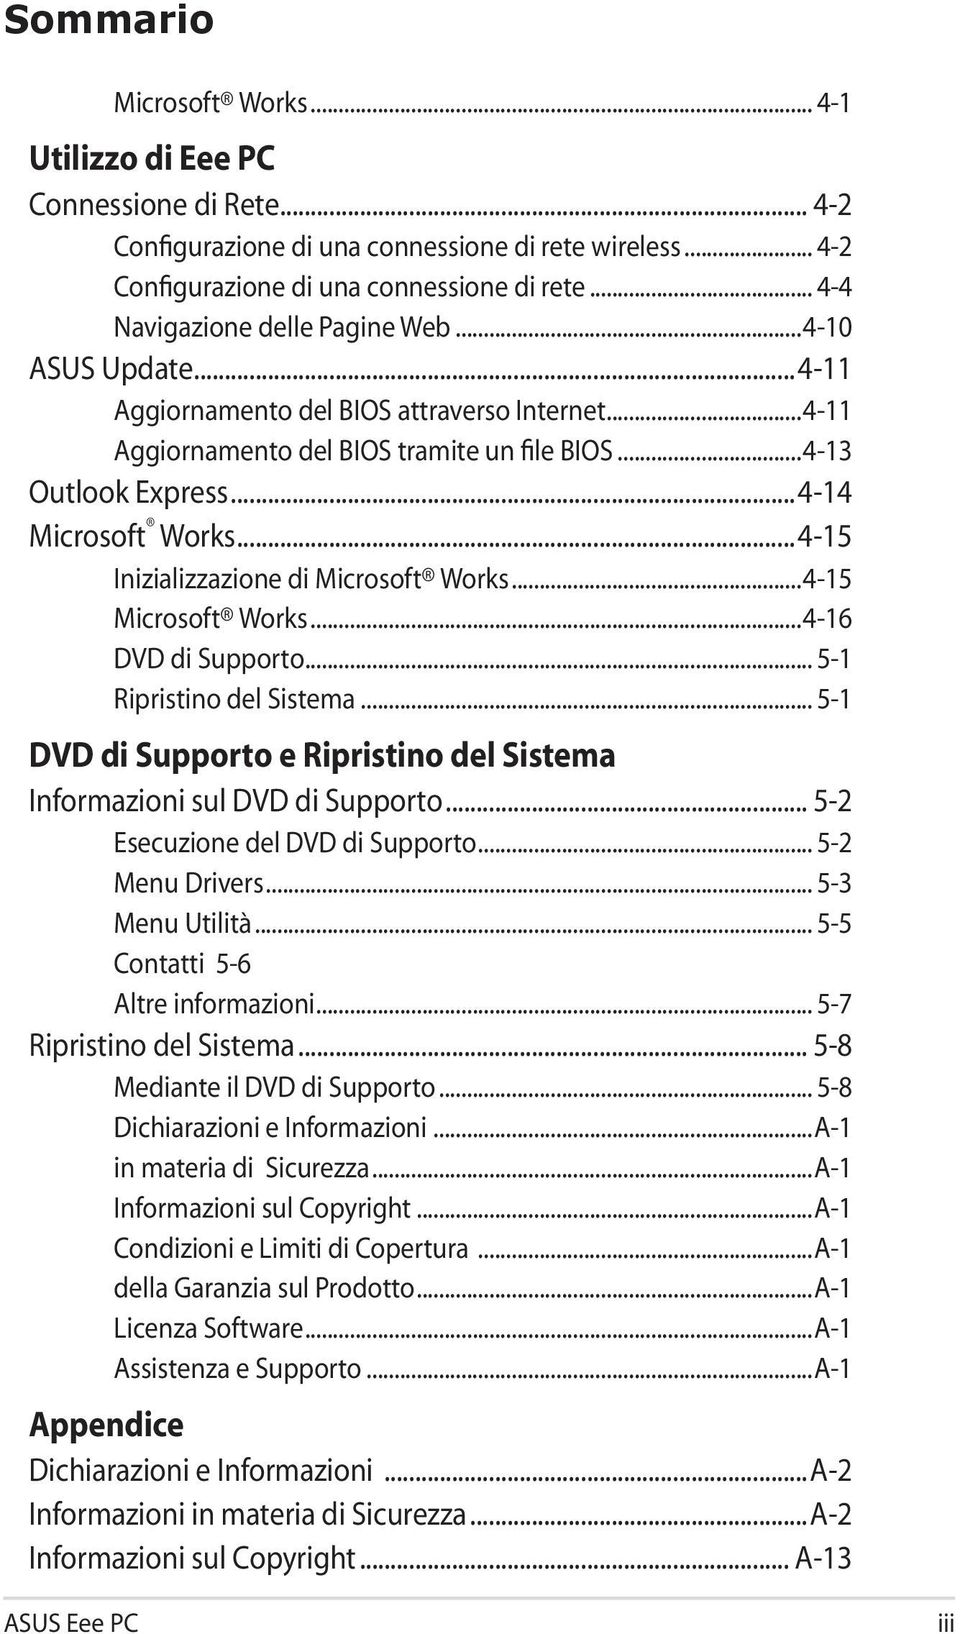 ..4-15 Inizializzazione di Microsoft Works...4-15 Microsoft Works...4-16 DVD di Supporto... 5-1 Ripristino del Sistema... 5-1 DVD di Supporto e Ripristino del Sistema Informazioni sul DVD di Supporto.